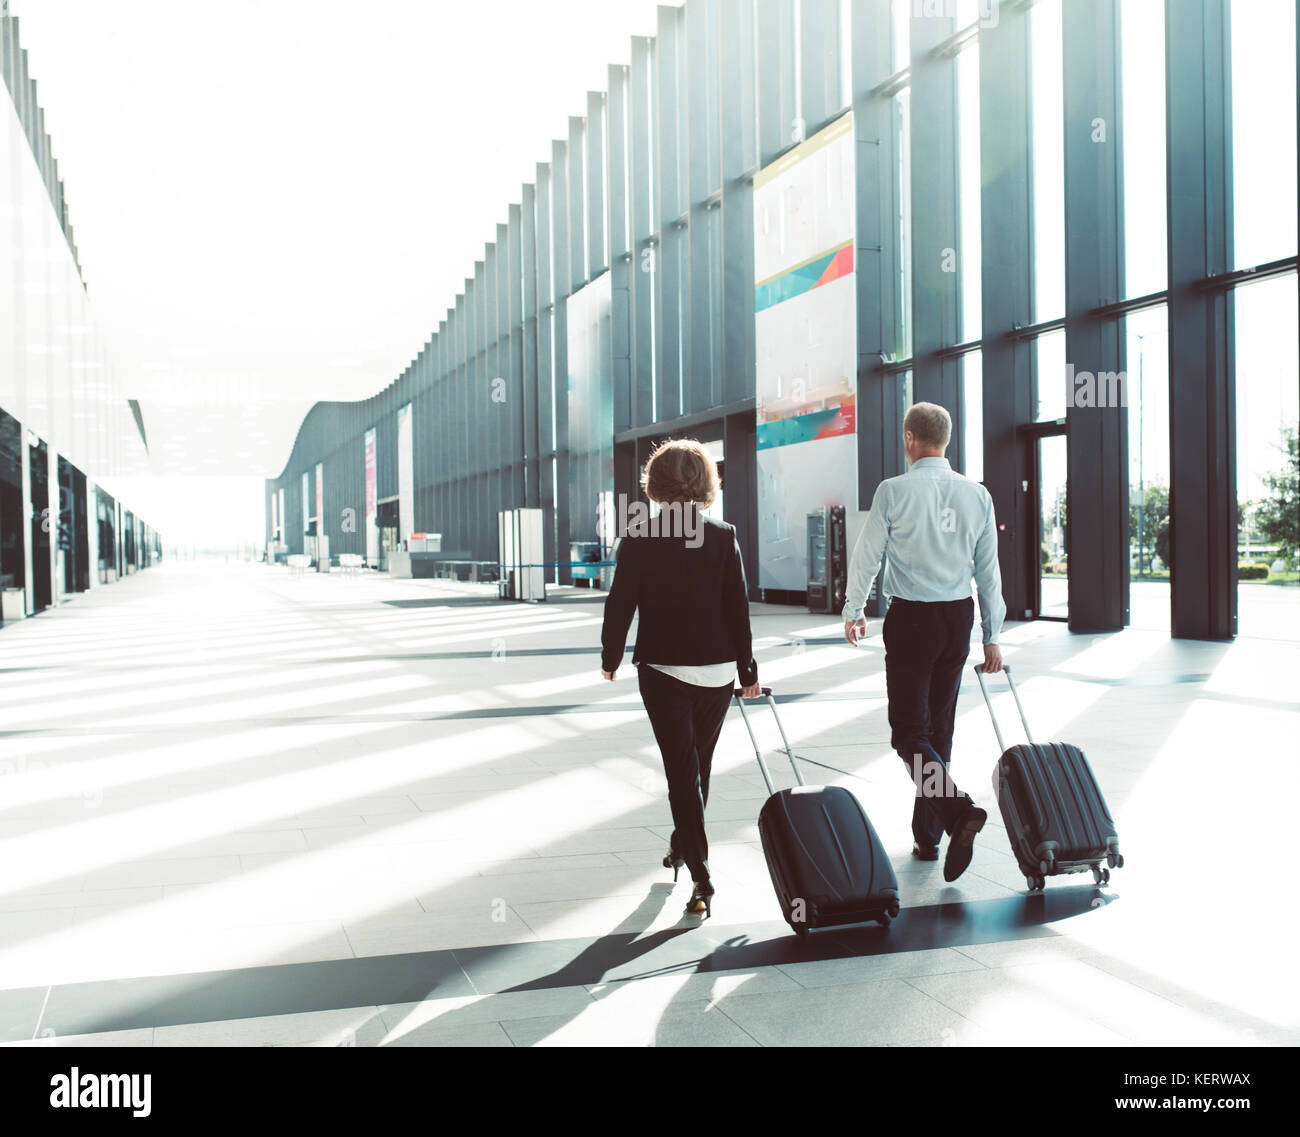 Les gens d'affaires dans l'Habillement formel walking in airport terminal avec des valises Banque D'Images